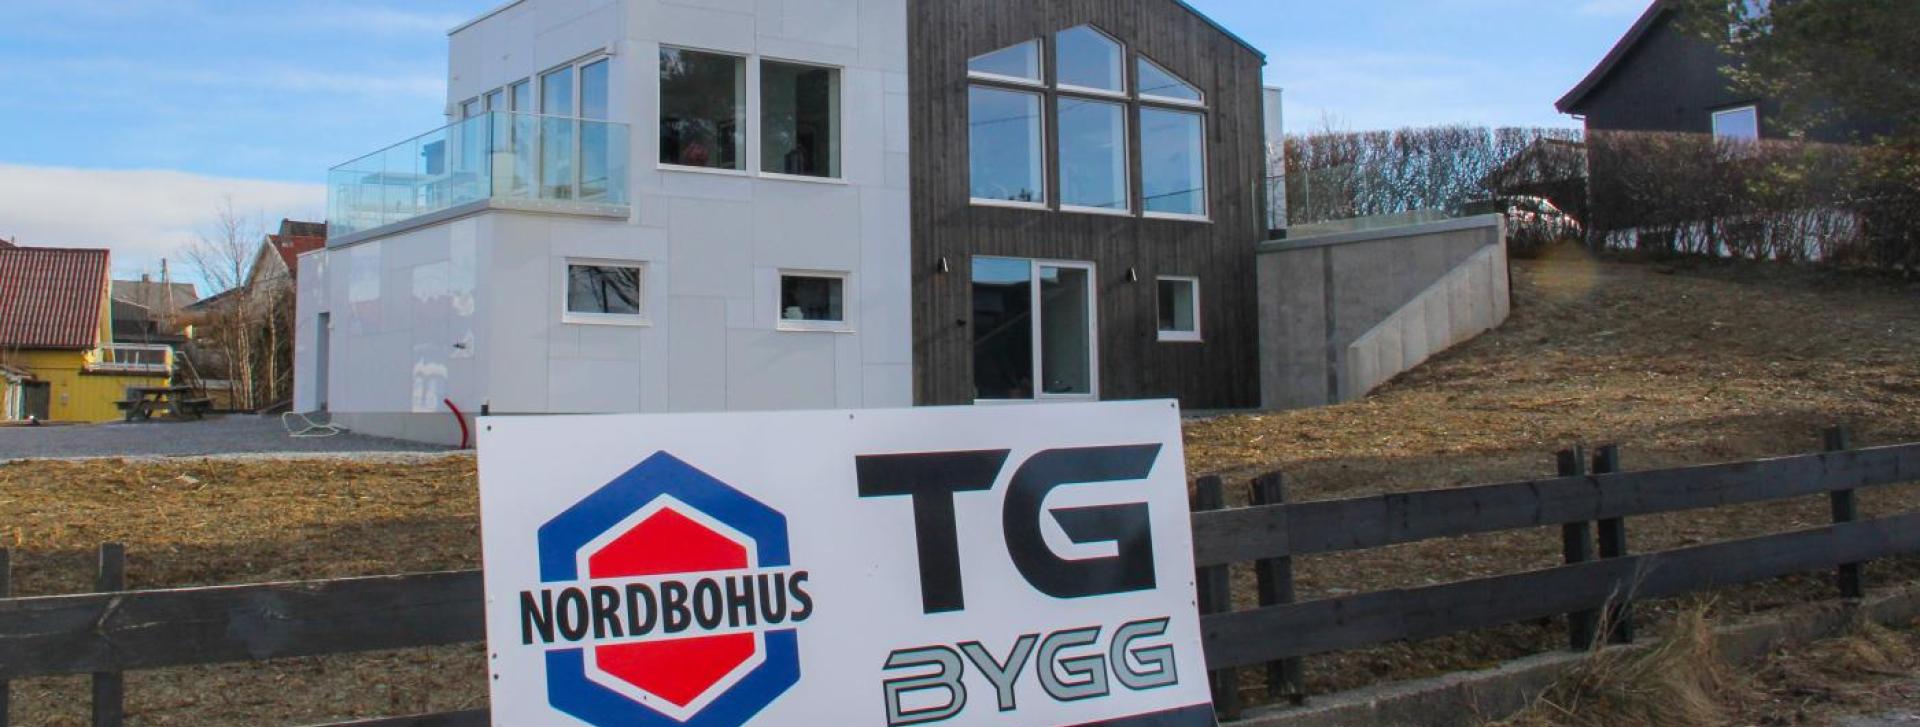 Bilde av hus etter rehabiliteringsjobb av Nordbohus TG Bygg. Stort skilt på gjerdet fremfor boligen som promoterer Nordbohus TG Bygg.